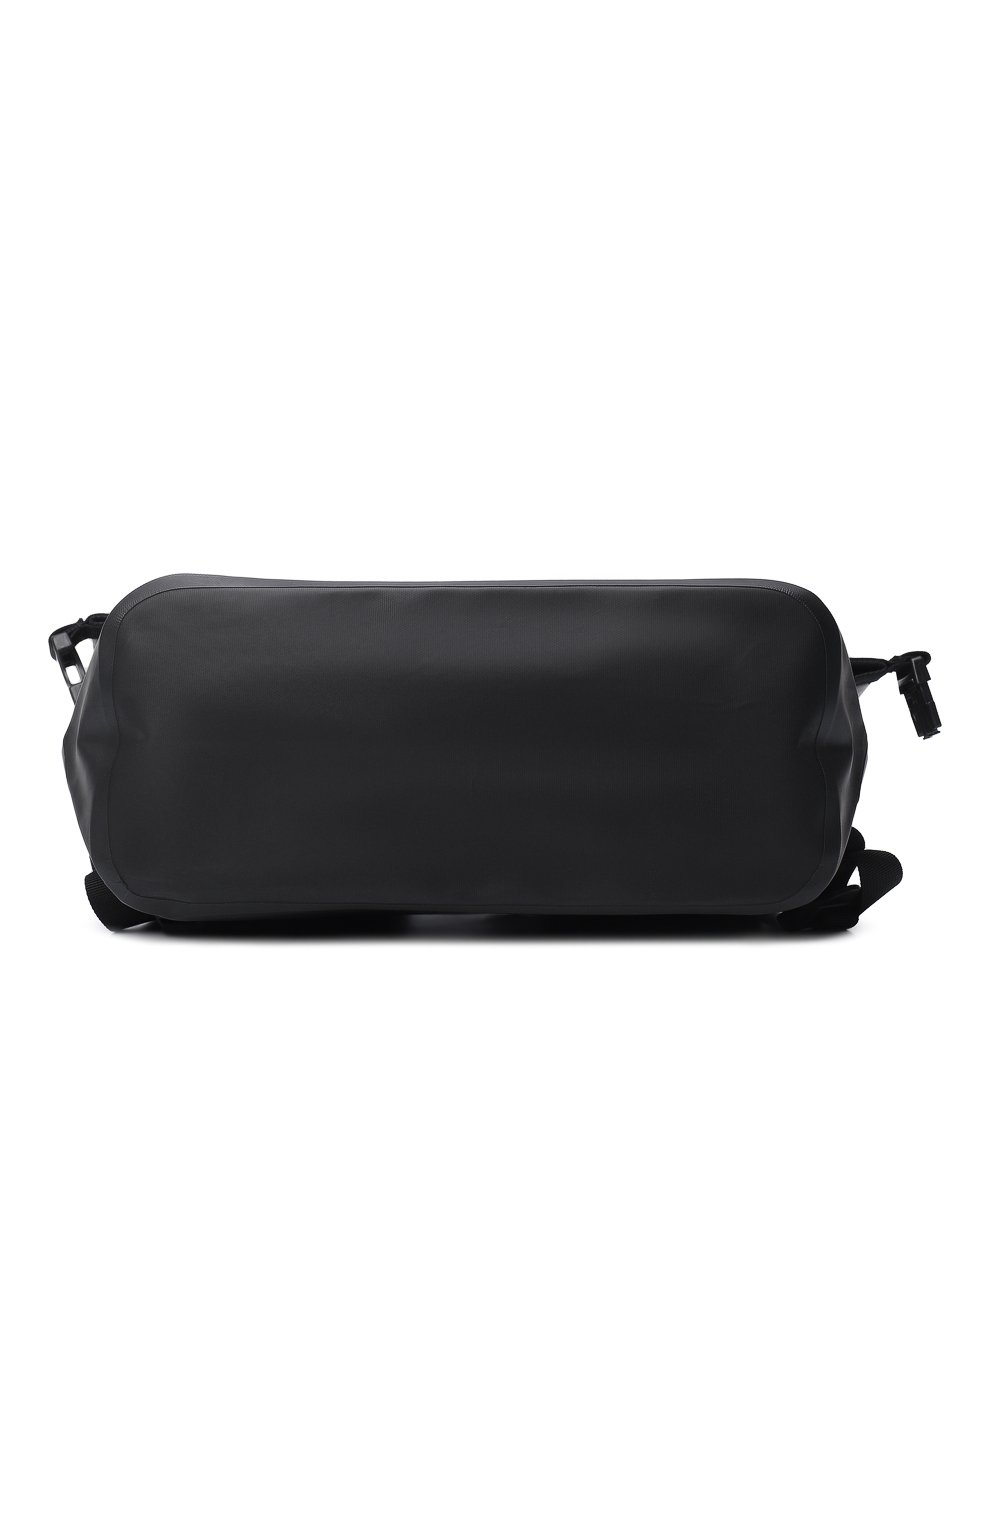 Рюкзак Yeezy x Gap Dry bag | Yeezy | Чёрный - 5